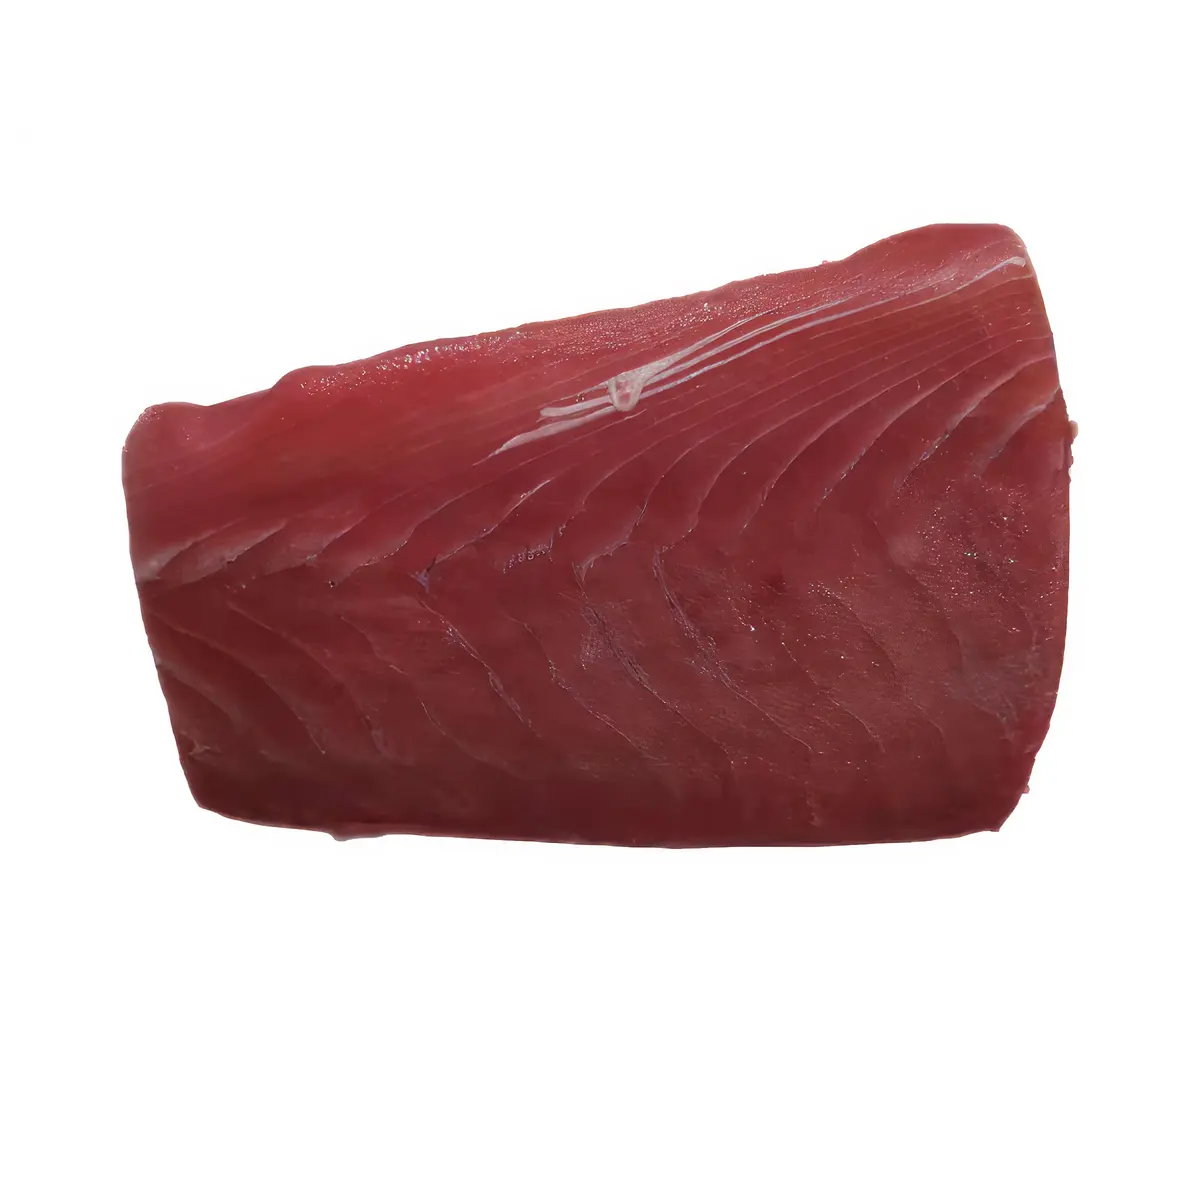 Bulk Body intero pesce nutriente a basso contenuto di grassi congelato filetto di tonno pinna gialla con certificazione GMP, ISO, HACCP